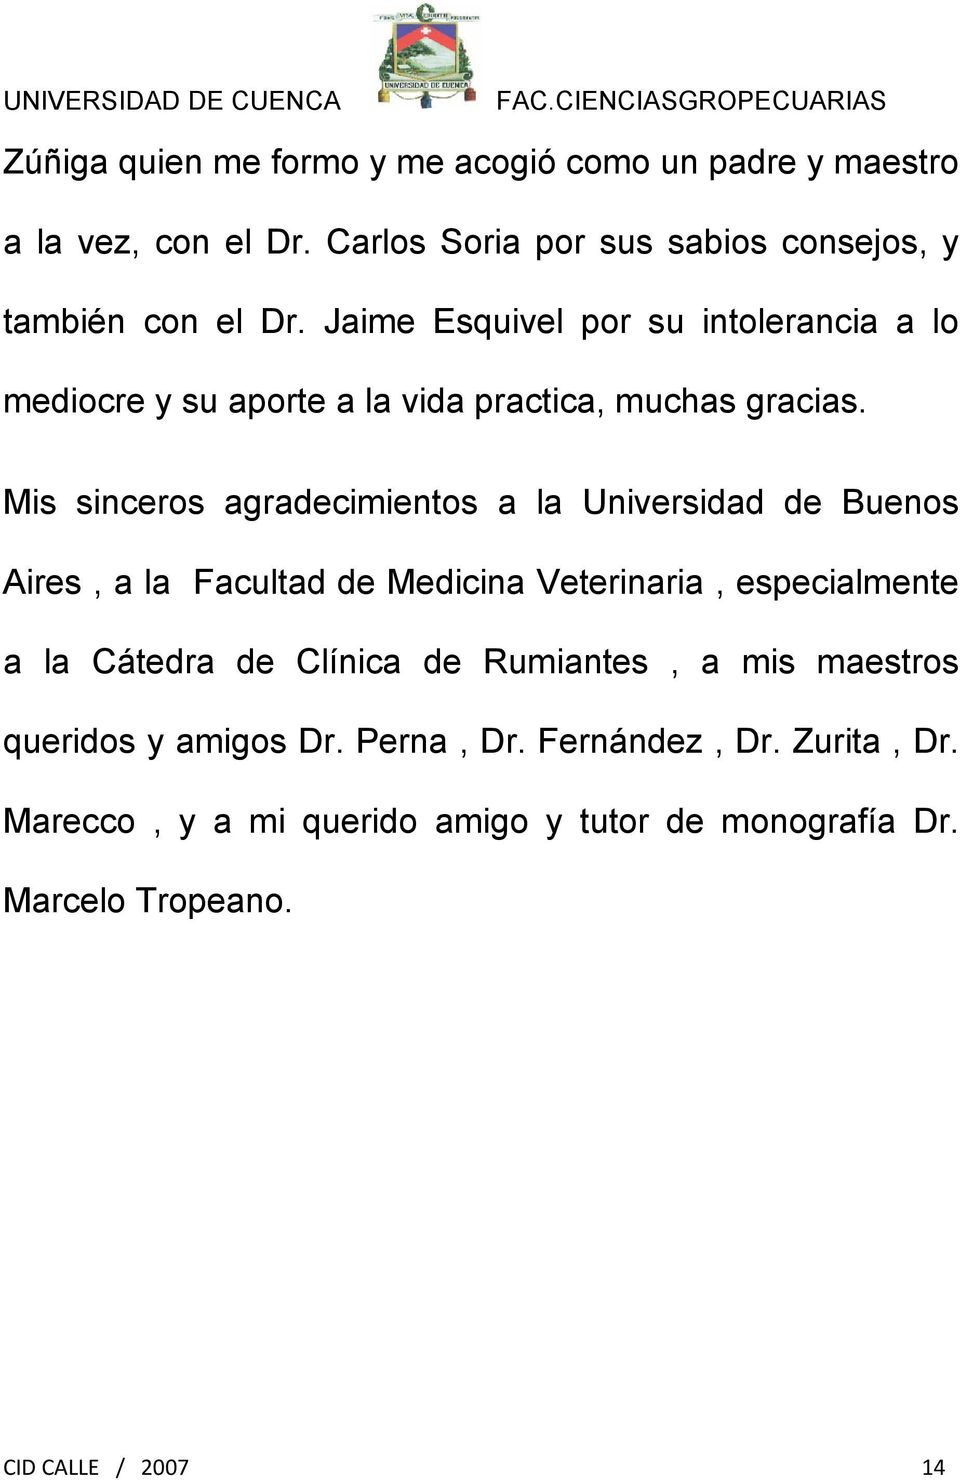 Mis sinceros agradecimientos a la Universidad de Buenos Aires, a la Facultad de Medicina Veterinaria, especialmente a la Cátedra de Clínica